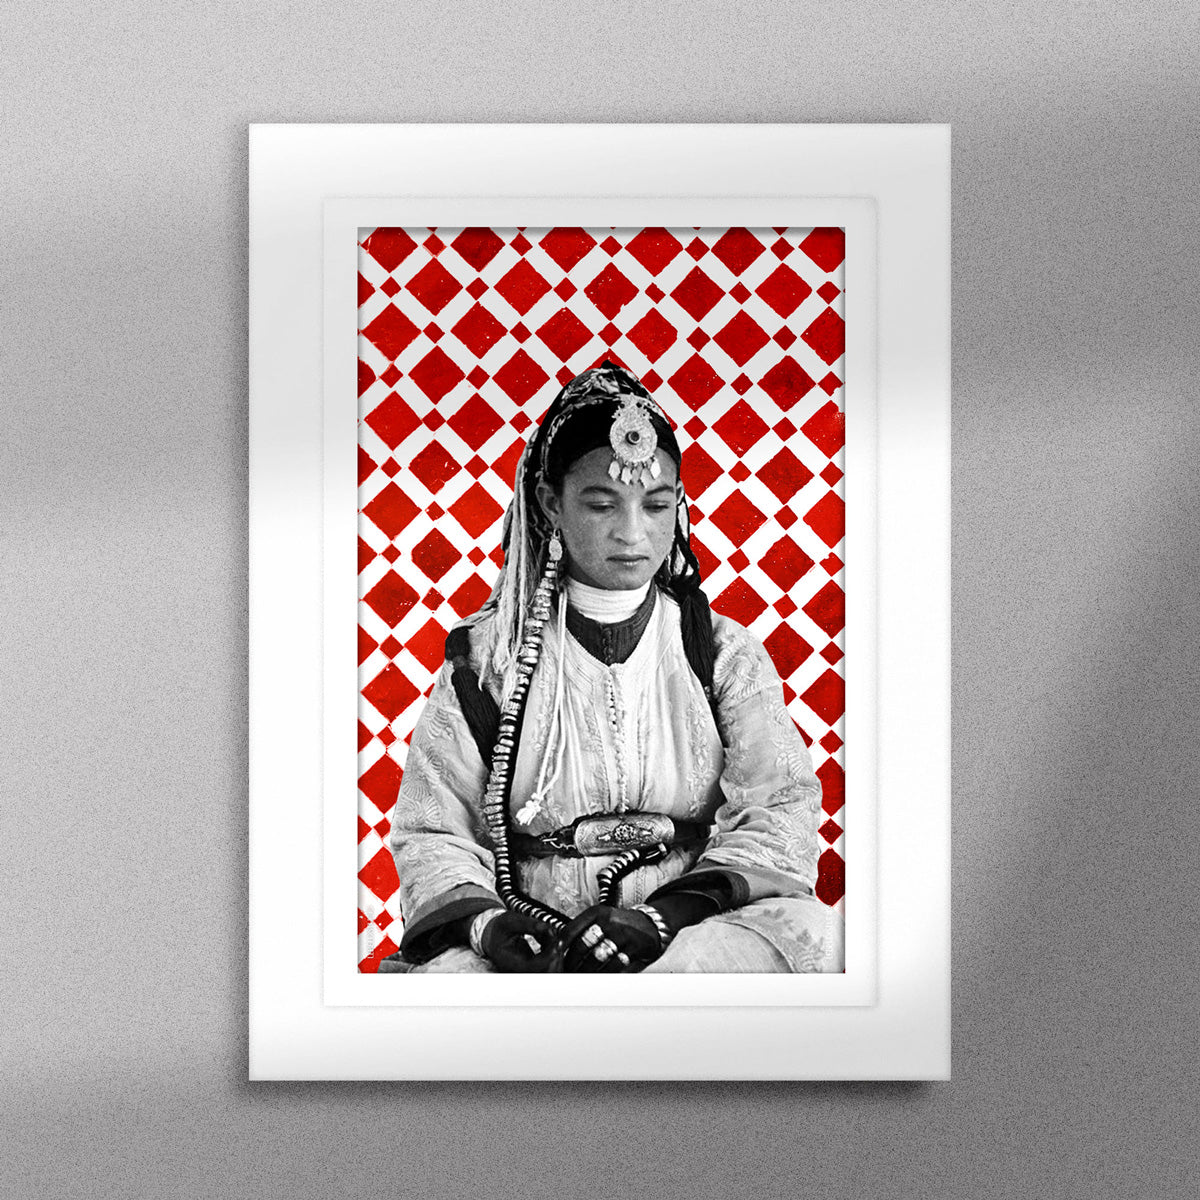 Tableau décoratif d'une femme marocaine, sur un fond de zellige marocain en rouge et blanc, encadré dans un cadre en blanc - Format A5